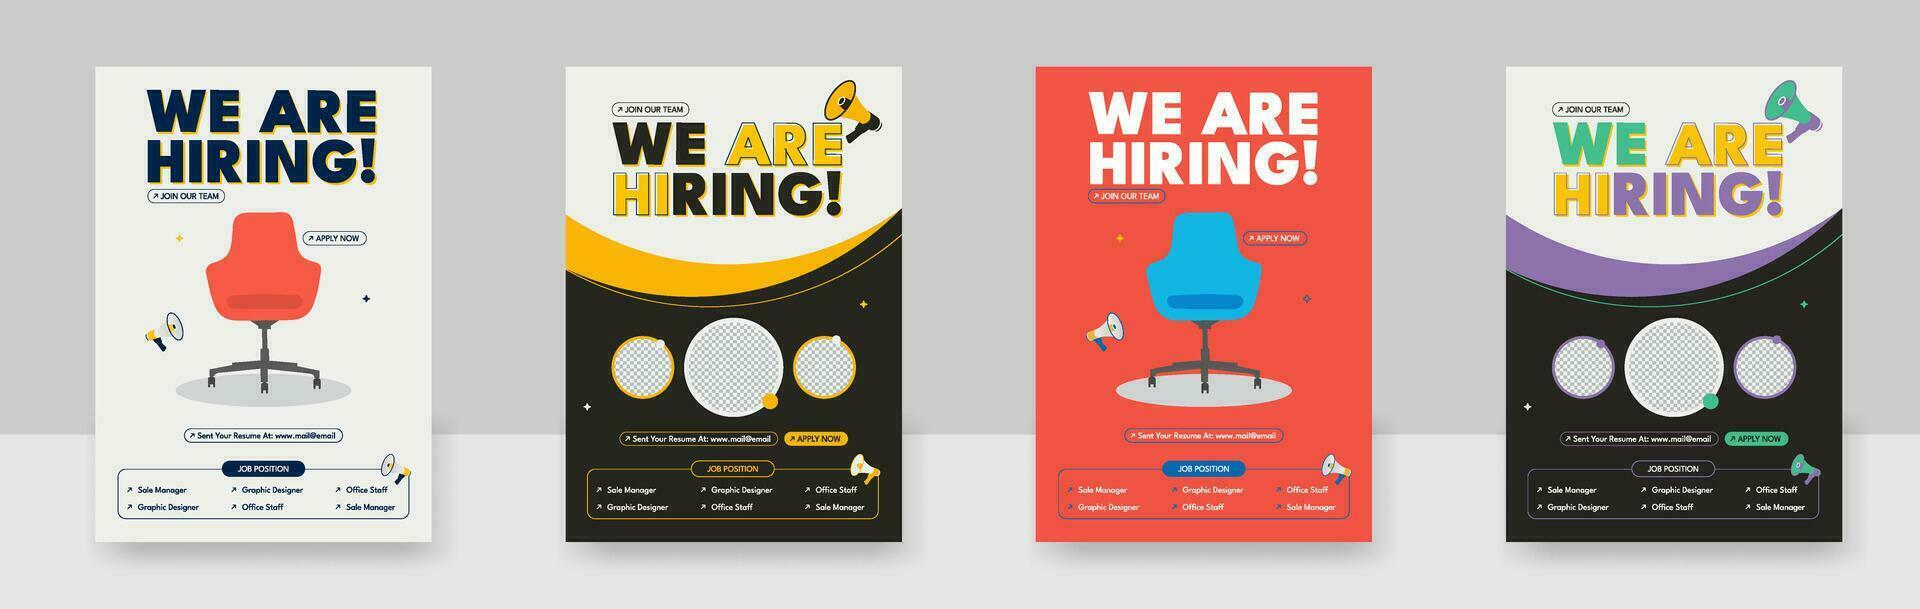 vi är anställa jobb annons flygblad, vi är anställa jobb vakans affisch design vektor